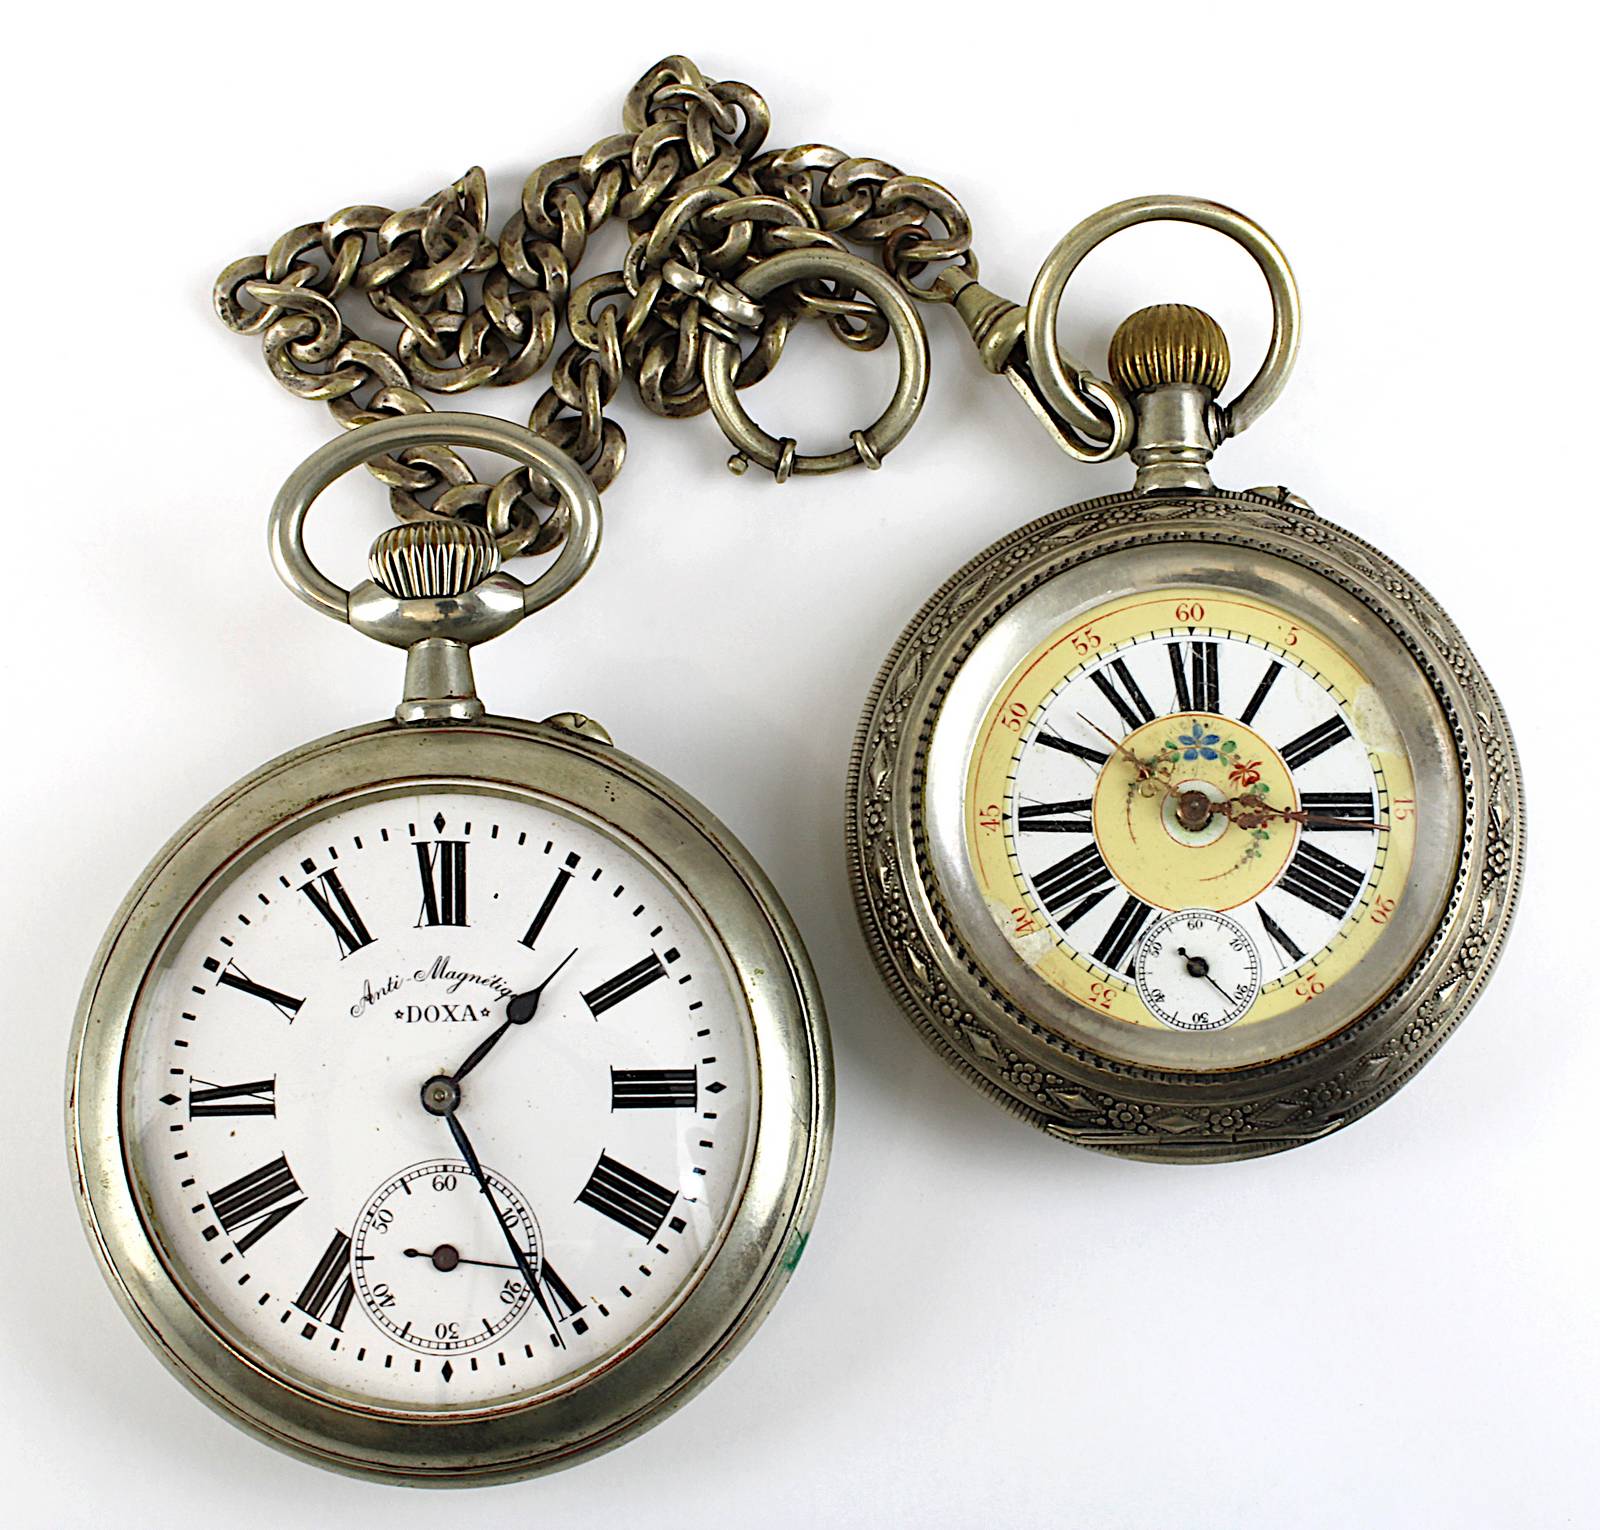 Zwei große Taschenuhren, Schweiz bzw. Frankreich Anfang 20. Jh., jeweils mechanisches Werk,